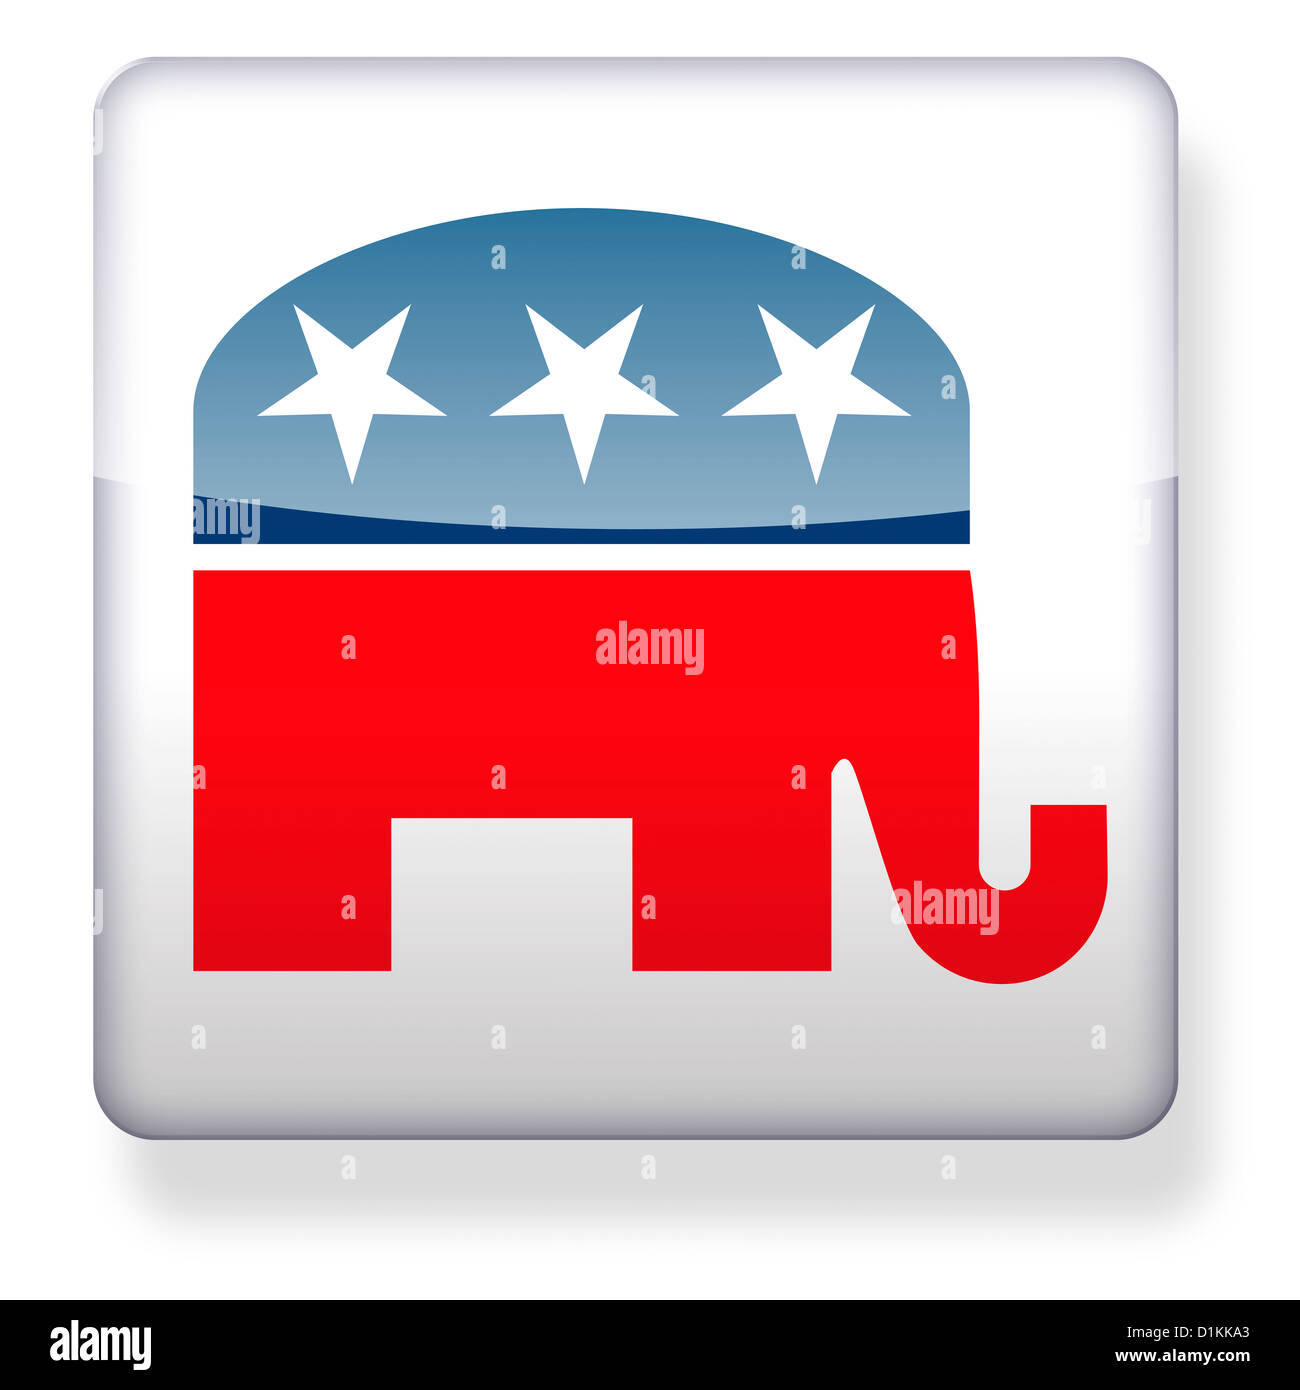 Elelphant logo politique républicaine comme une icône de l'application Banque D'Images